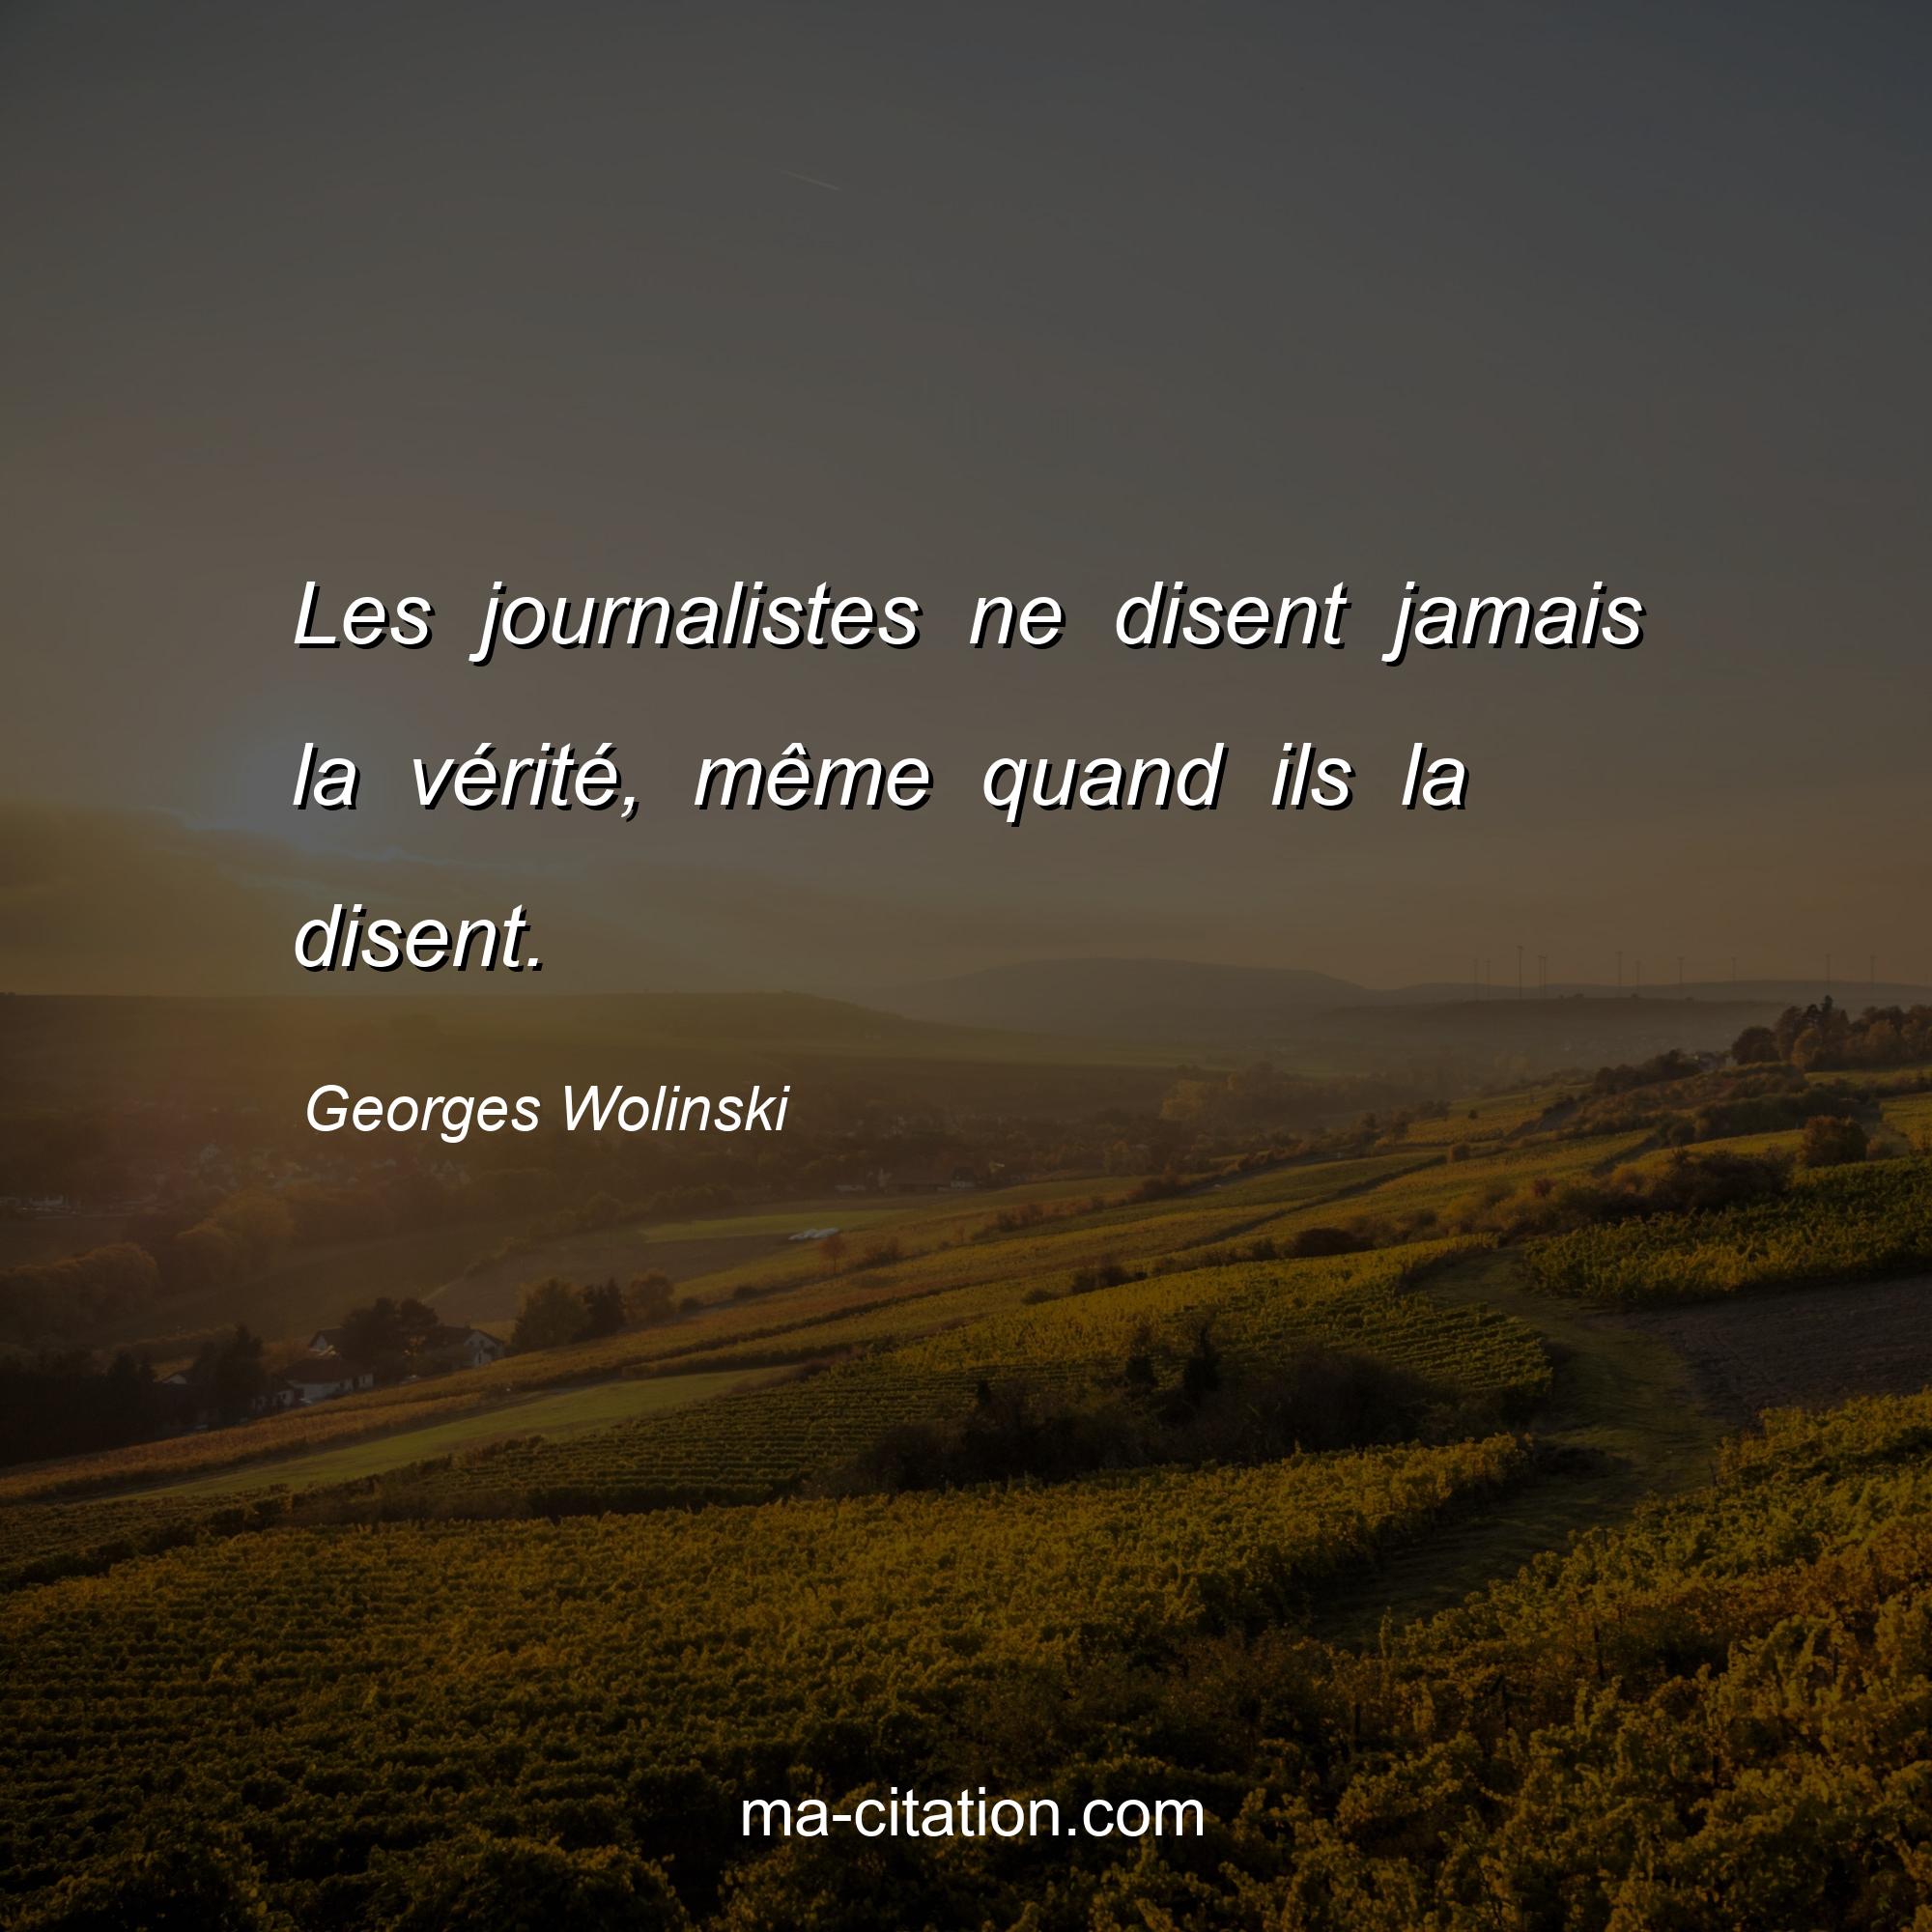 Georges Wolinski : Les journalistes ne disent jamais la vérité, même quand ils la disent.